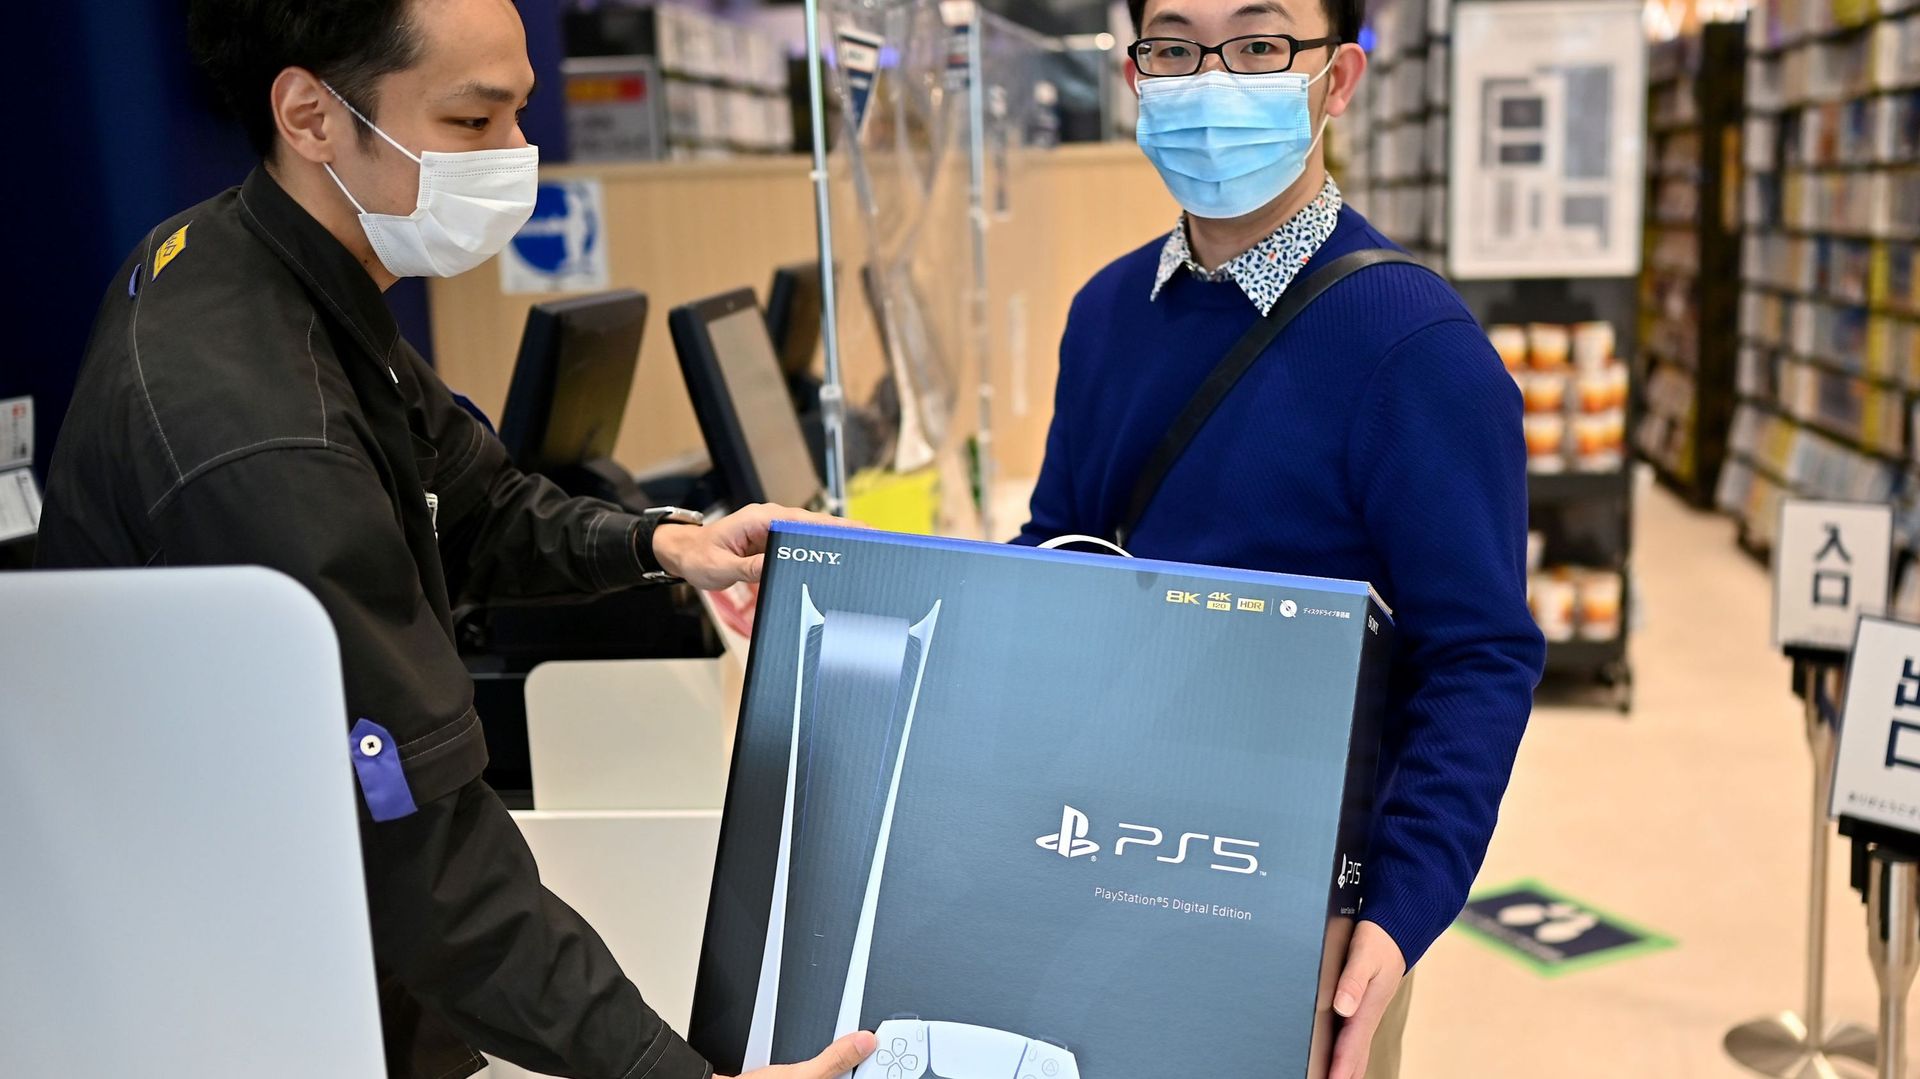 La PS5 vient de sortir dans plusieurs pays, comme au Japon, avant d'arriver en Europe dans quelques jours